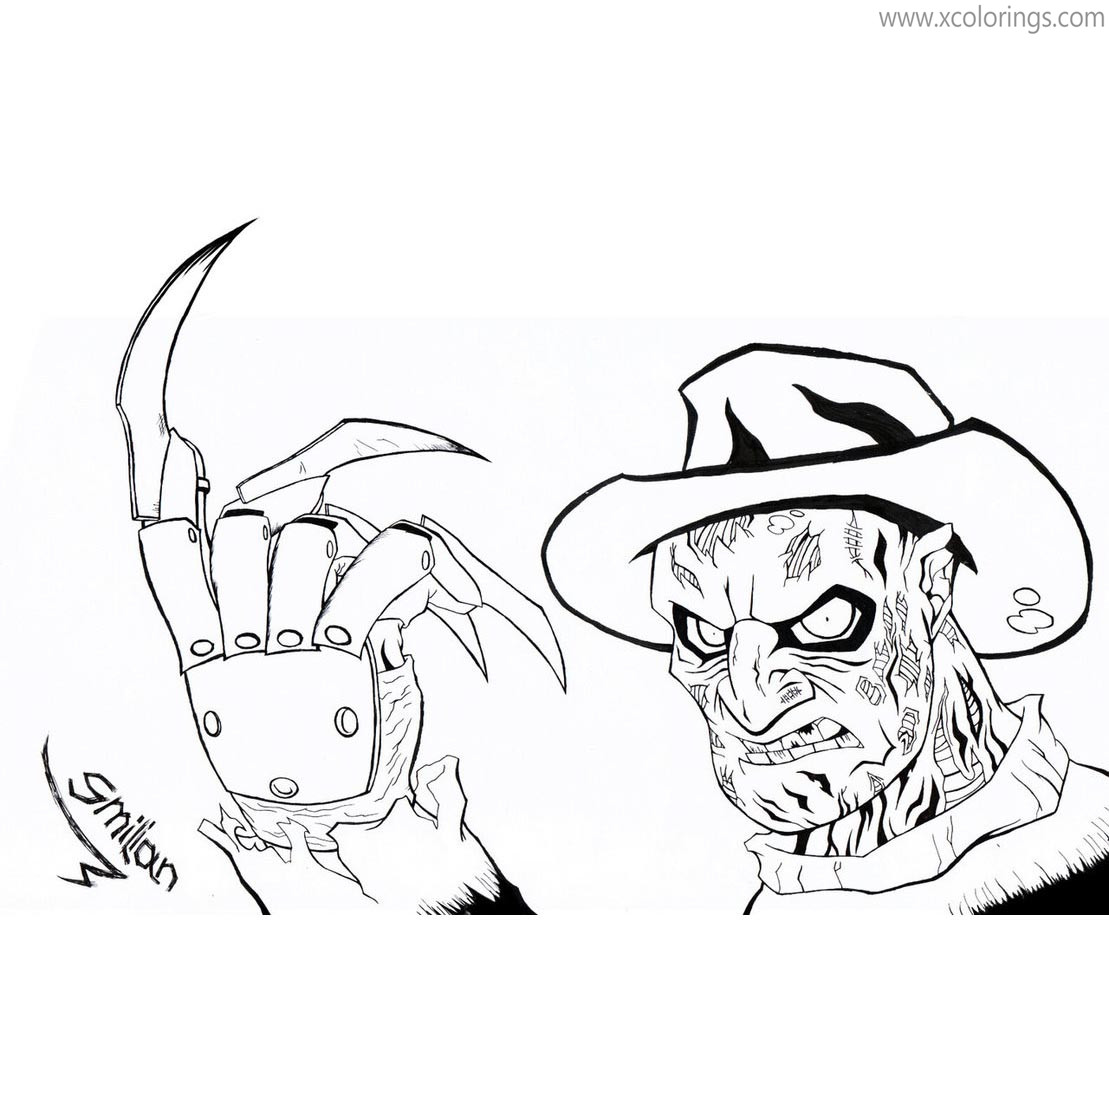 Free Freddy Krueger Coloring Pages Nightmare Elm Street By Sav8197 printable